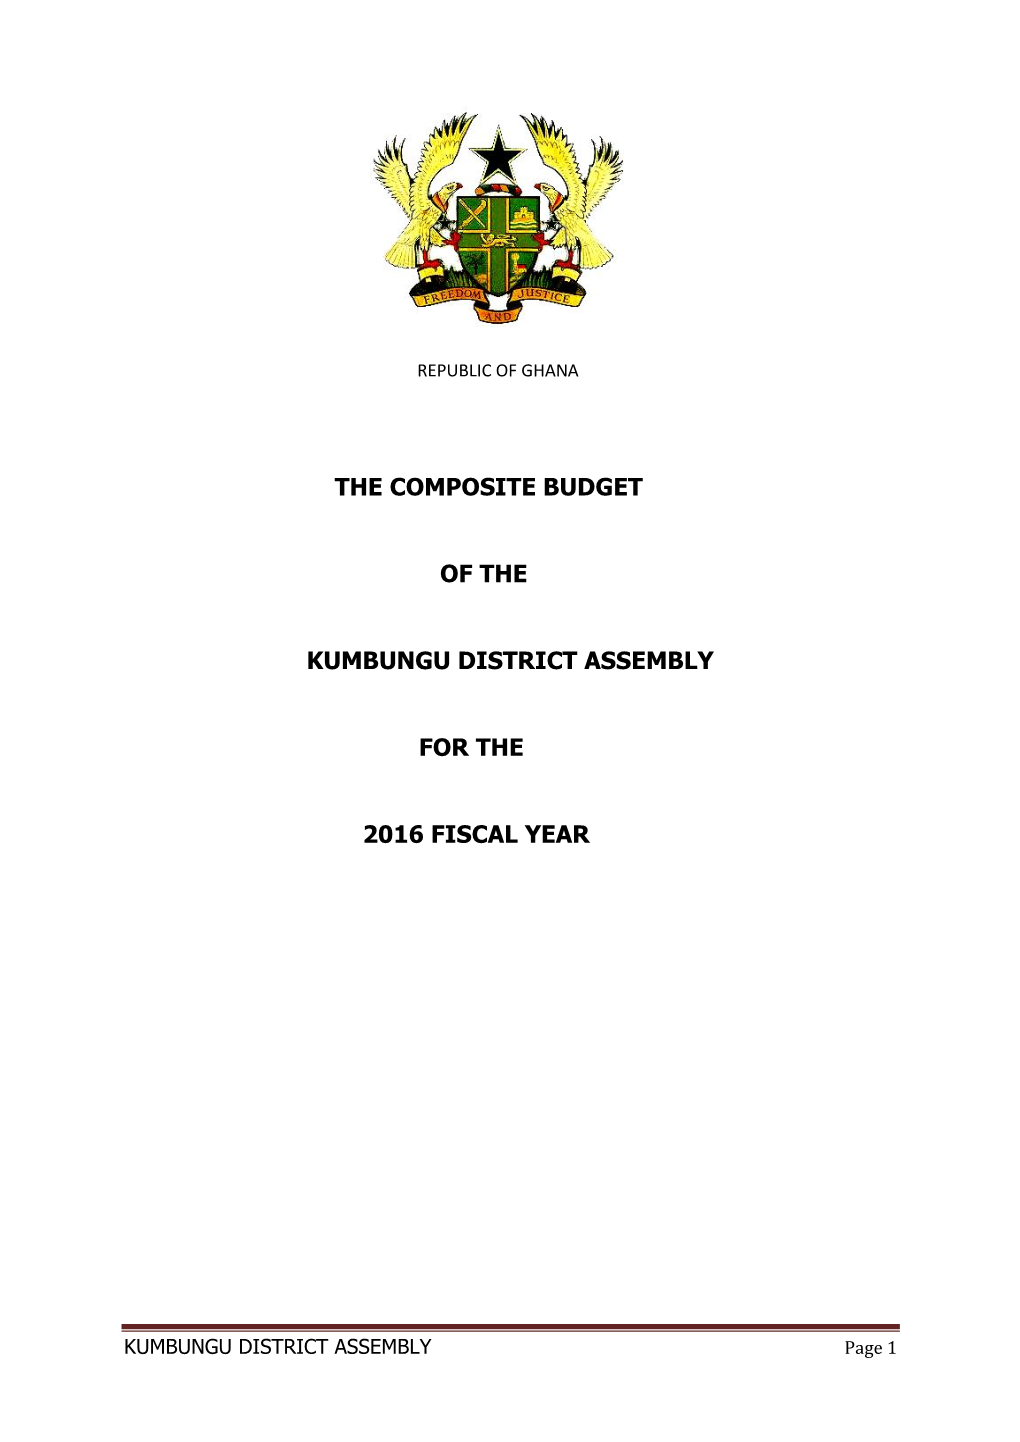 Kumbungu District Assembly